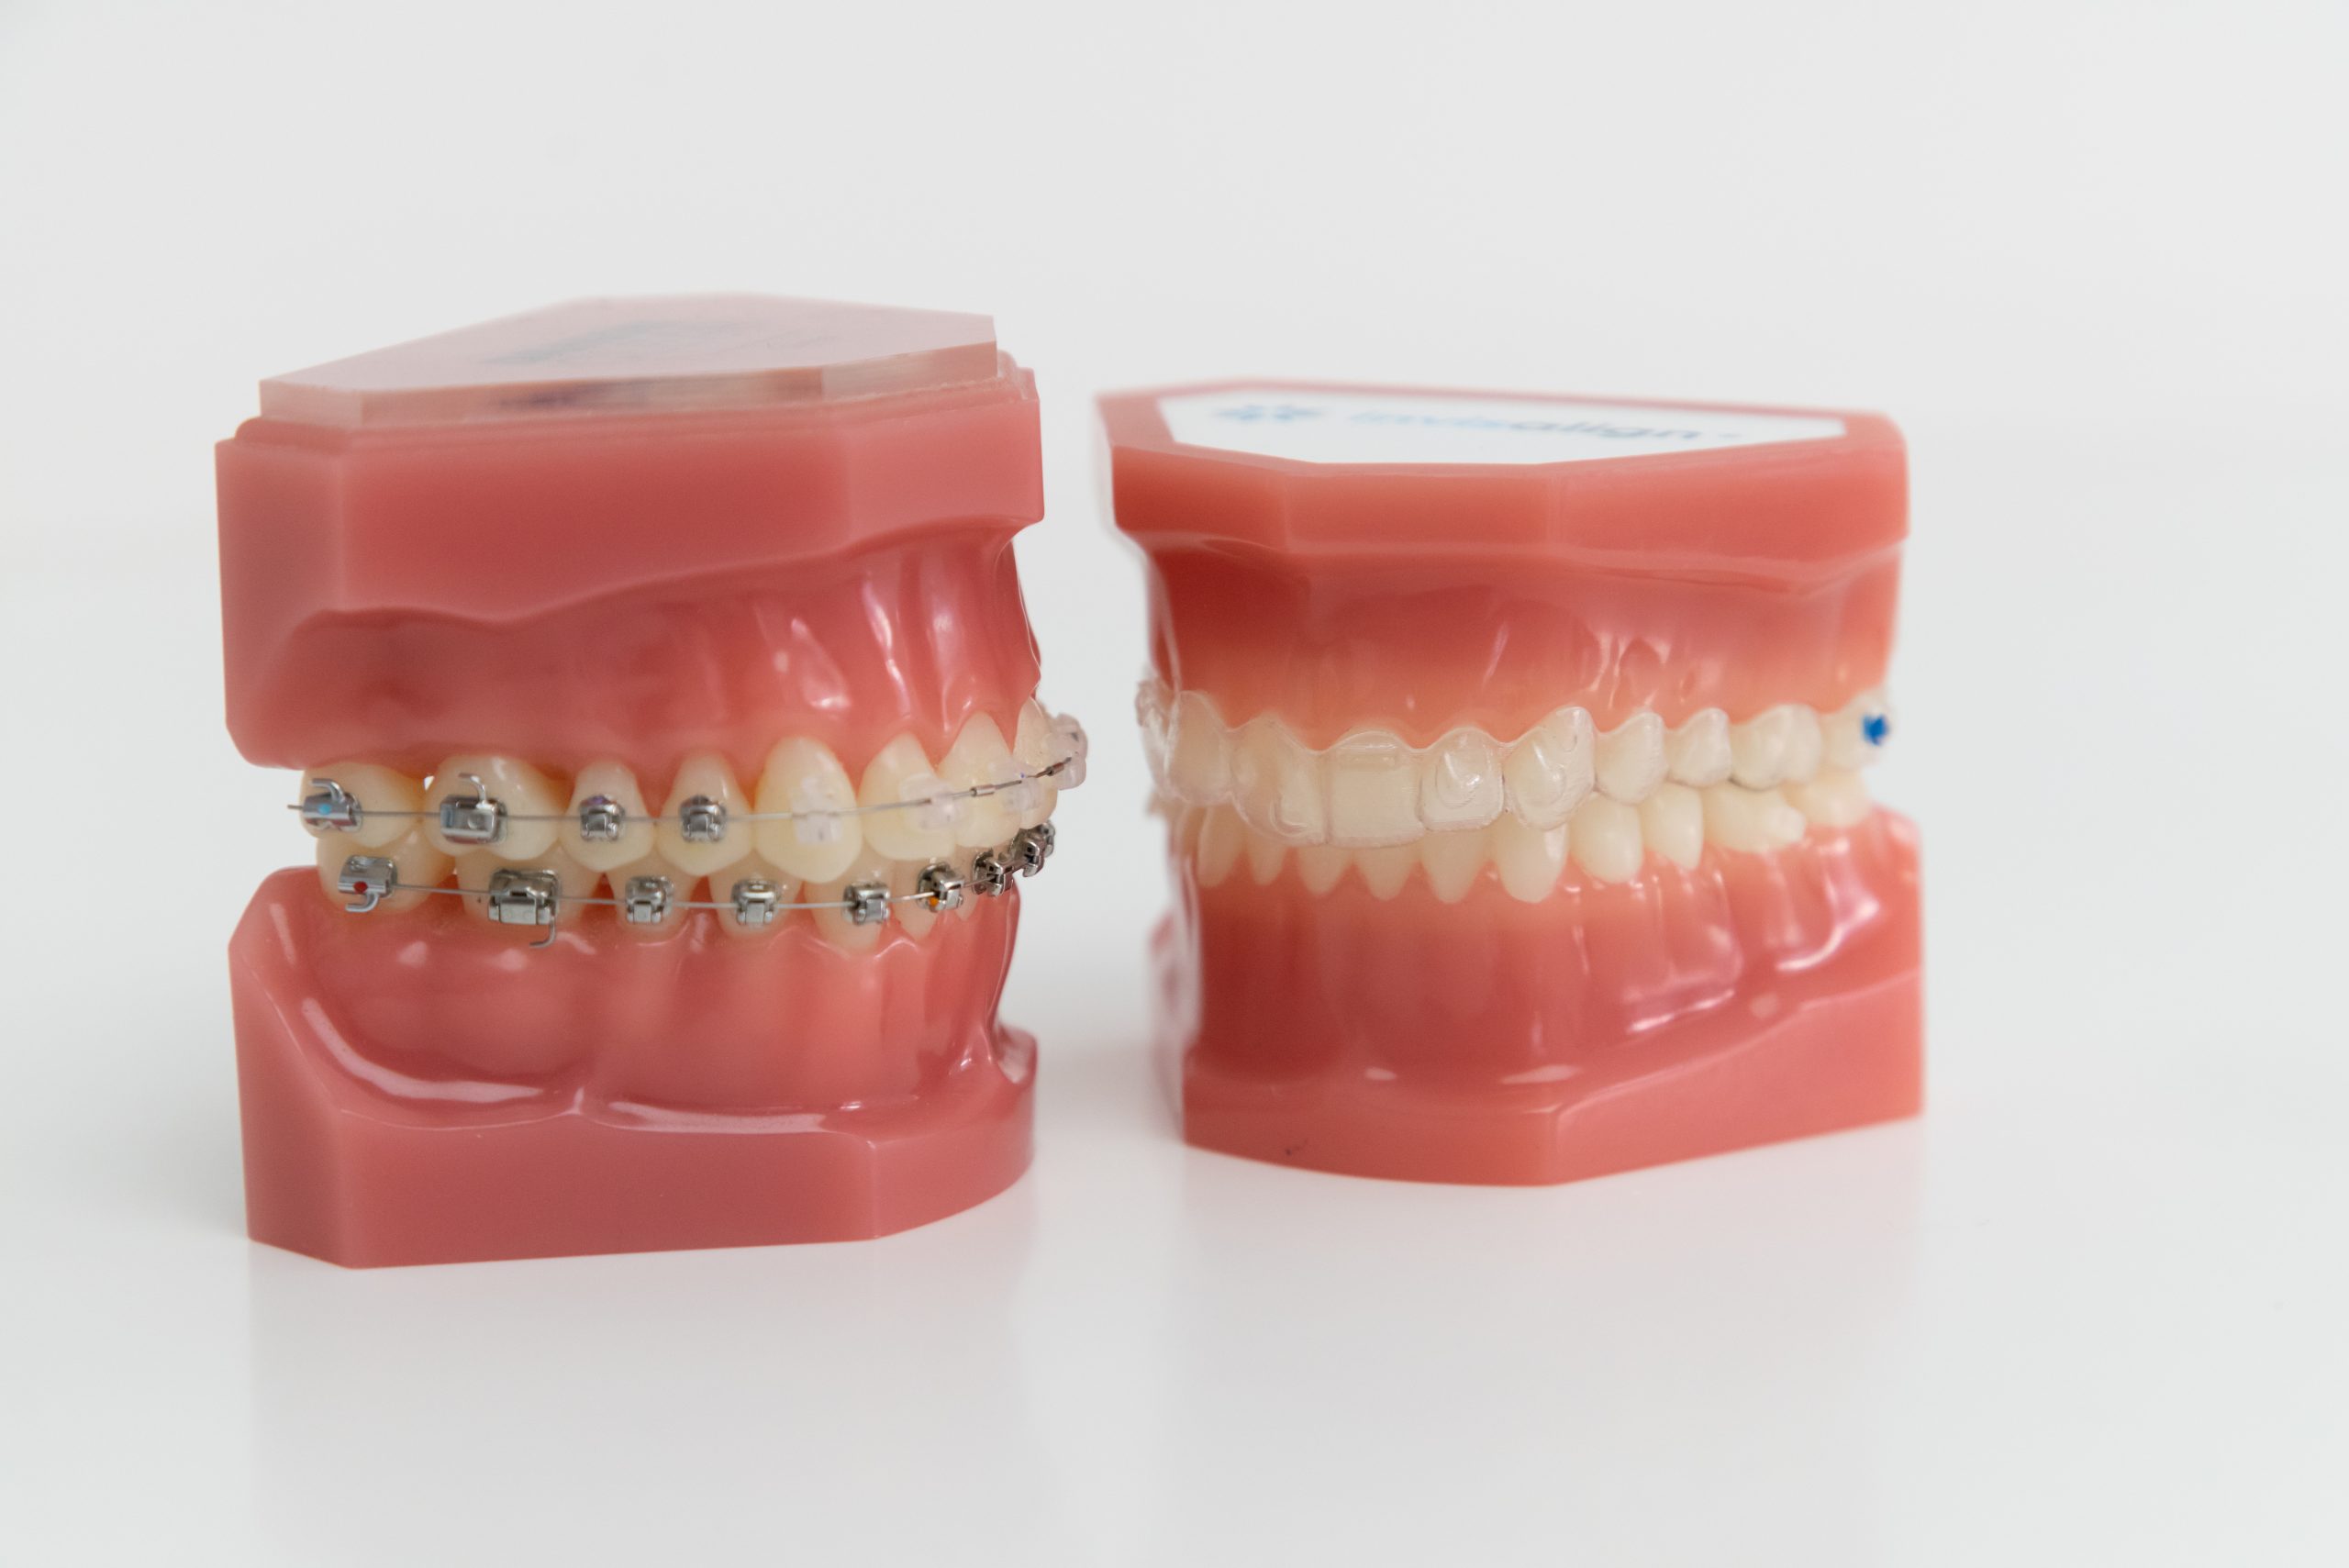 Orthodontie et mini-vis / Dr Eric Ursat Strasbourg 